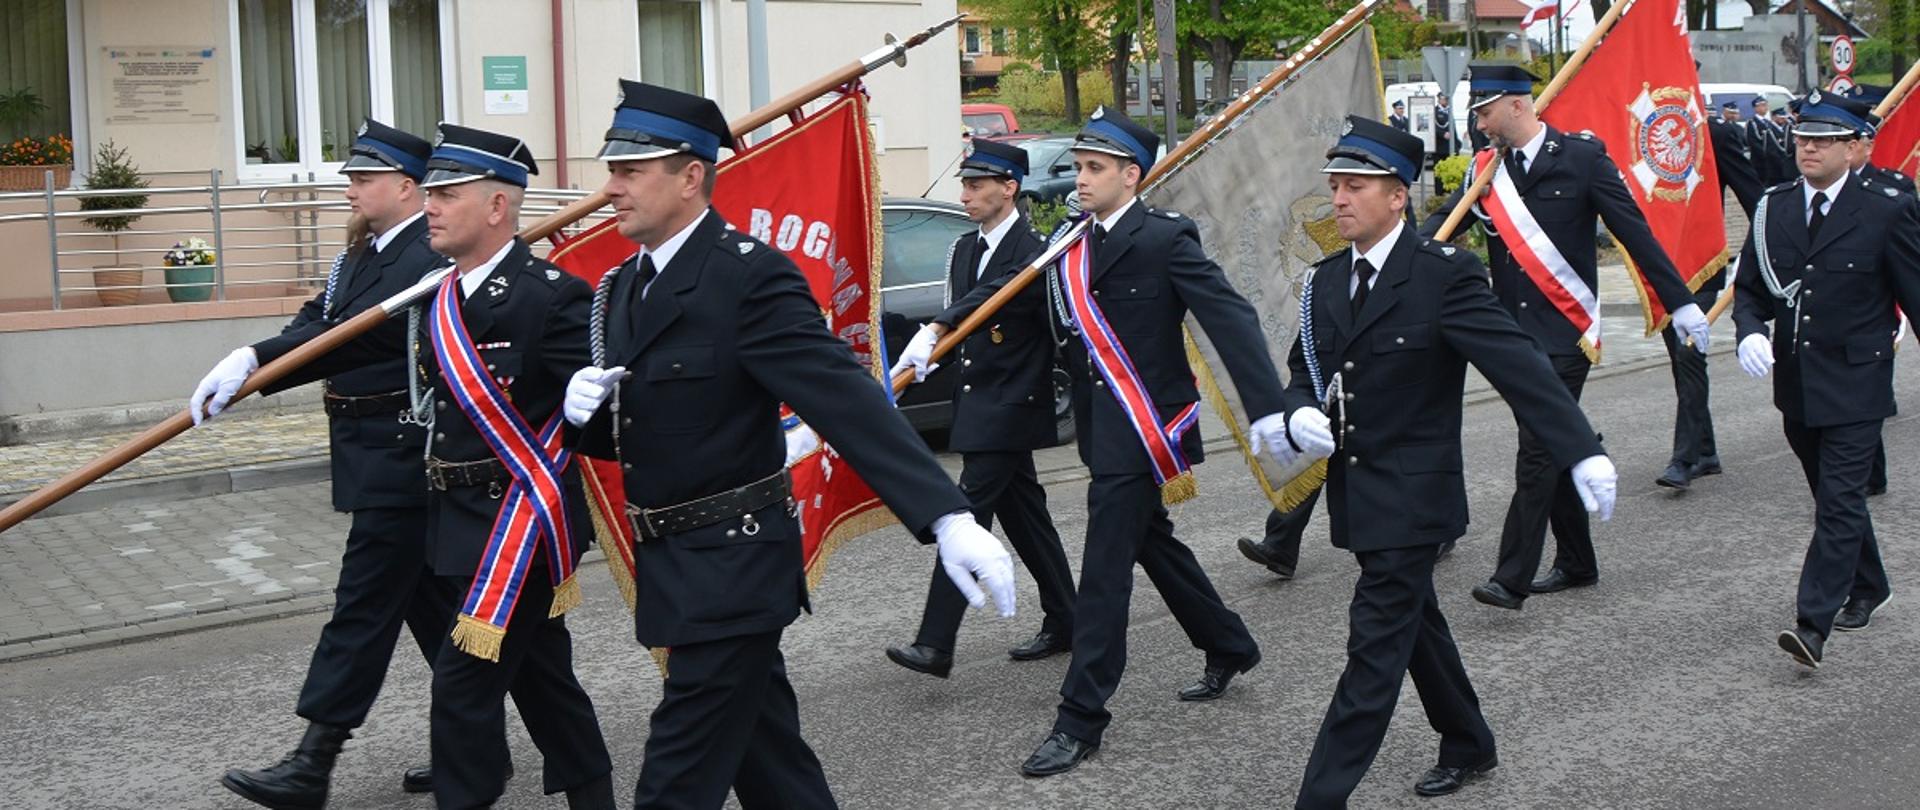 Mężczyźni ubrani w ciemne mundury i czapki z sztandarami idą w pochodzie 